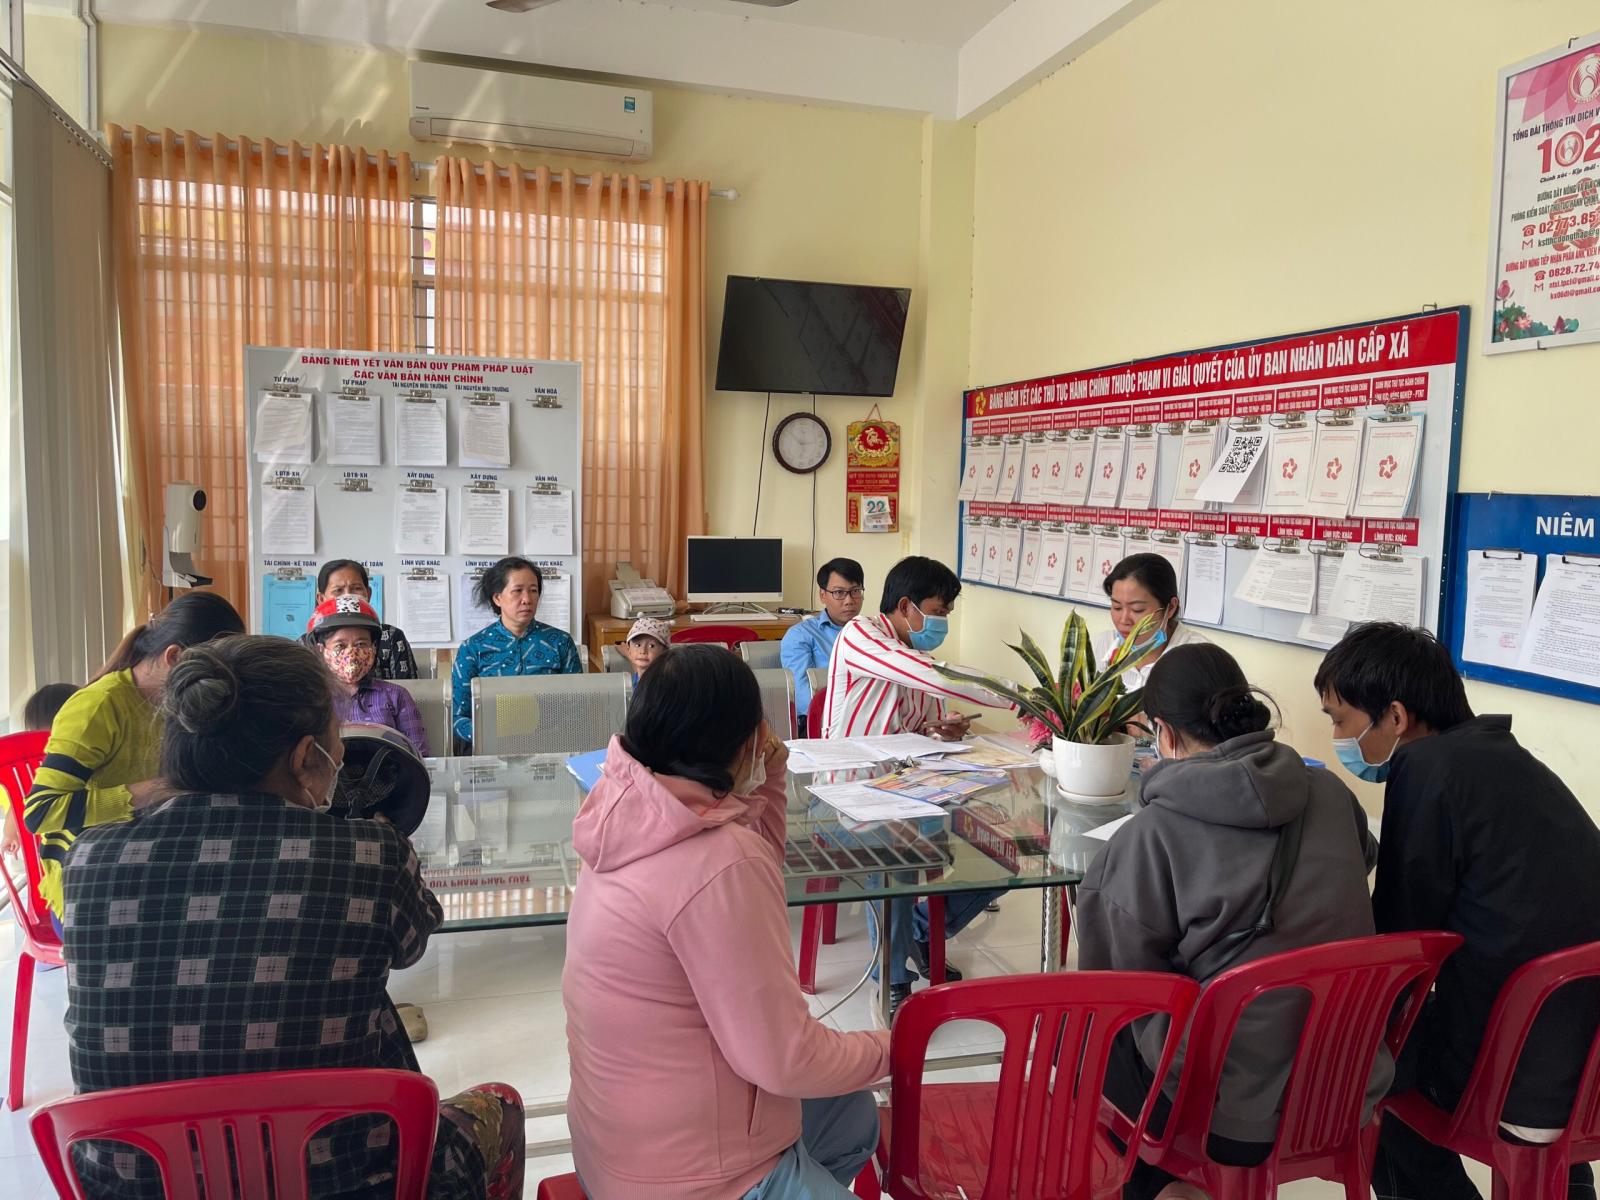 Mô hình giải quyết thủ tục hành chính “Hồ sơ ngày thứ ba không hẹn” tại Bộ phận Tiếp nhận và Trả kết quả của xã Tân Thuận Đông